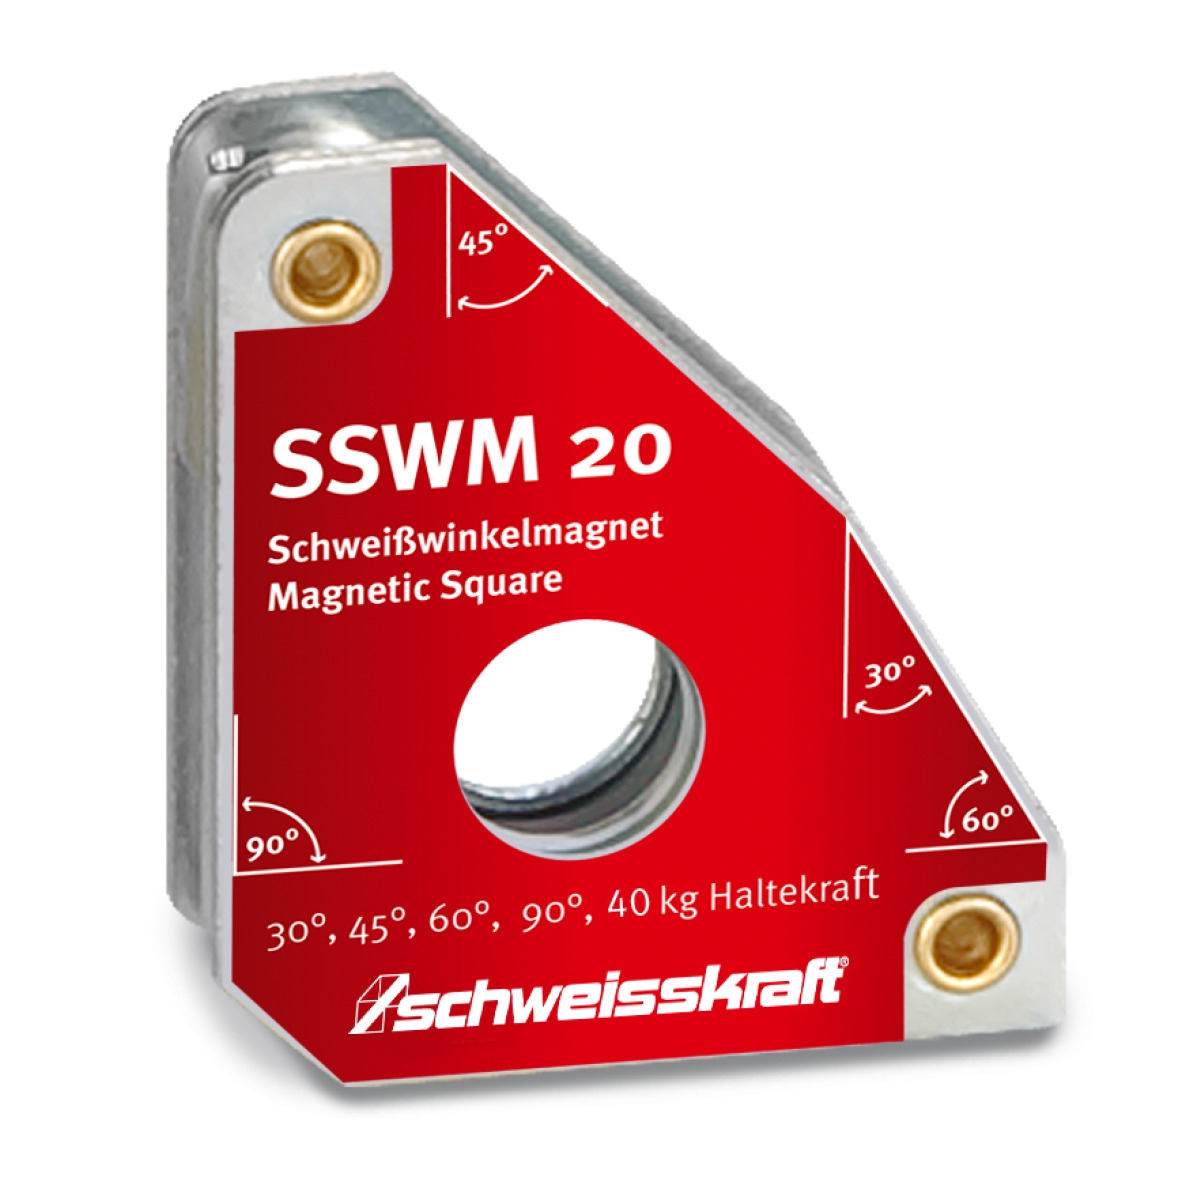 Schweisskraft Permanent Schweißwinkelmagnet SSWM 20